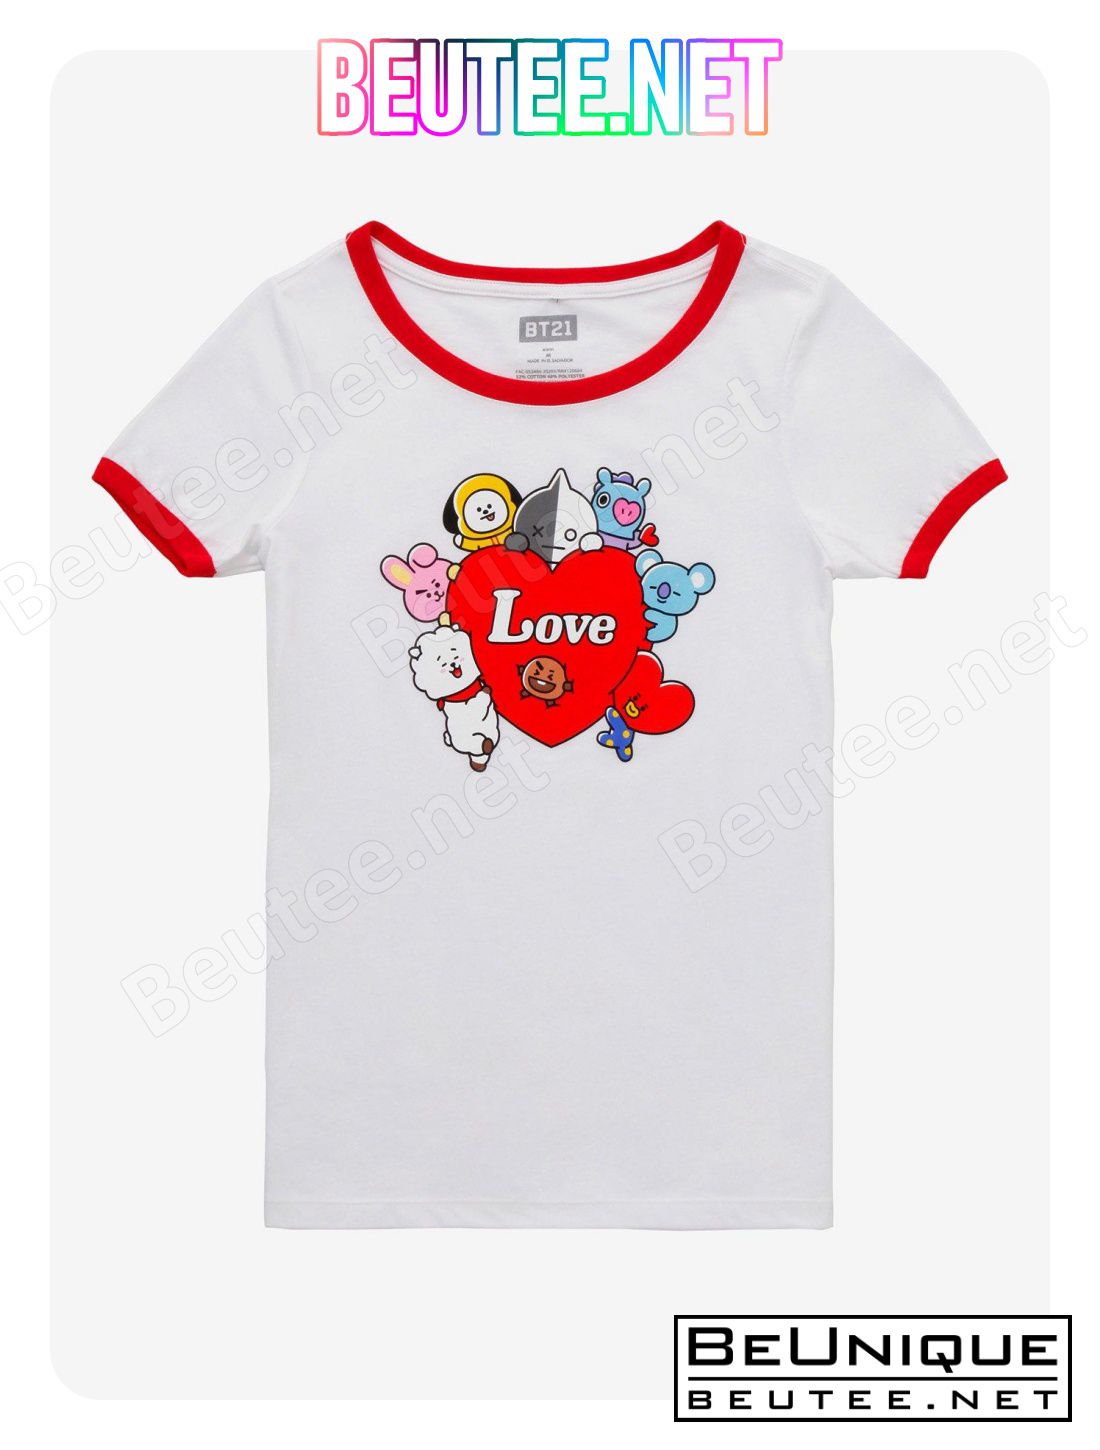 BT21 Love Heart Girls Ringer T-Shirt